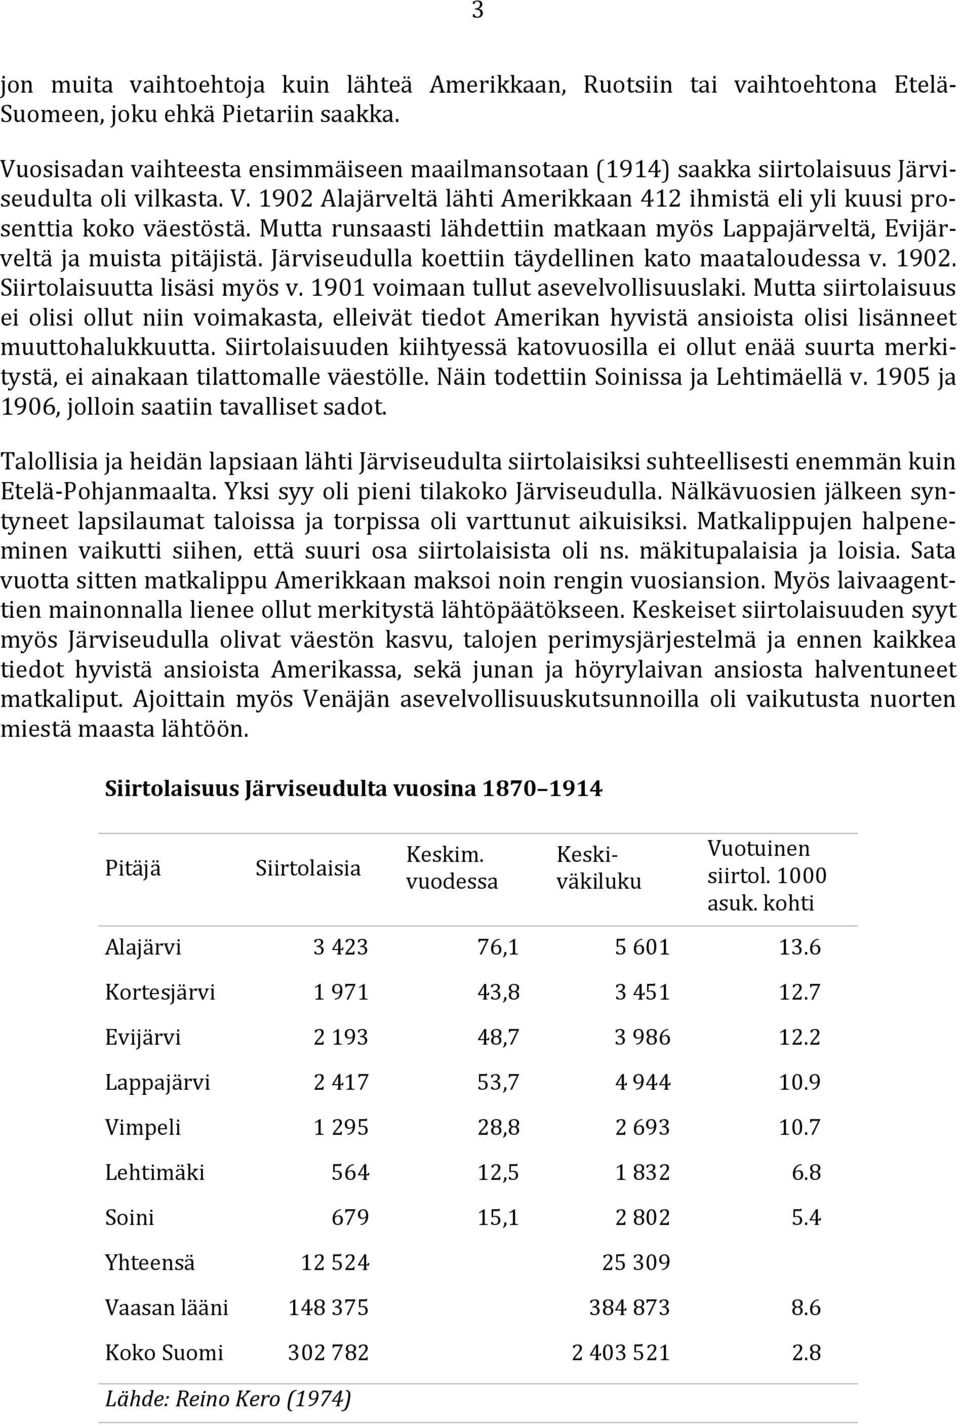 Mutta runsaasti lähdettiin matkaan myös Lappajärveltä, Evijärveltä ja muista pitäjistä. Järviseudulla koettiin täydellinen kato maataloudessa v. 1902. Siirtolaisuutta lisäsi myös v.